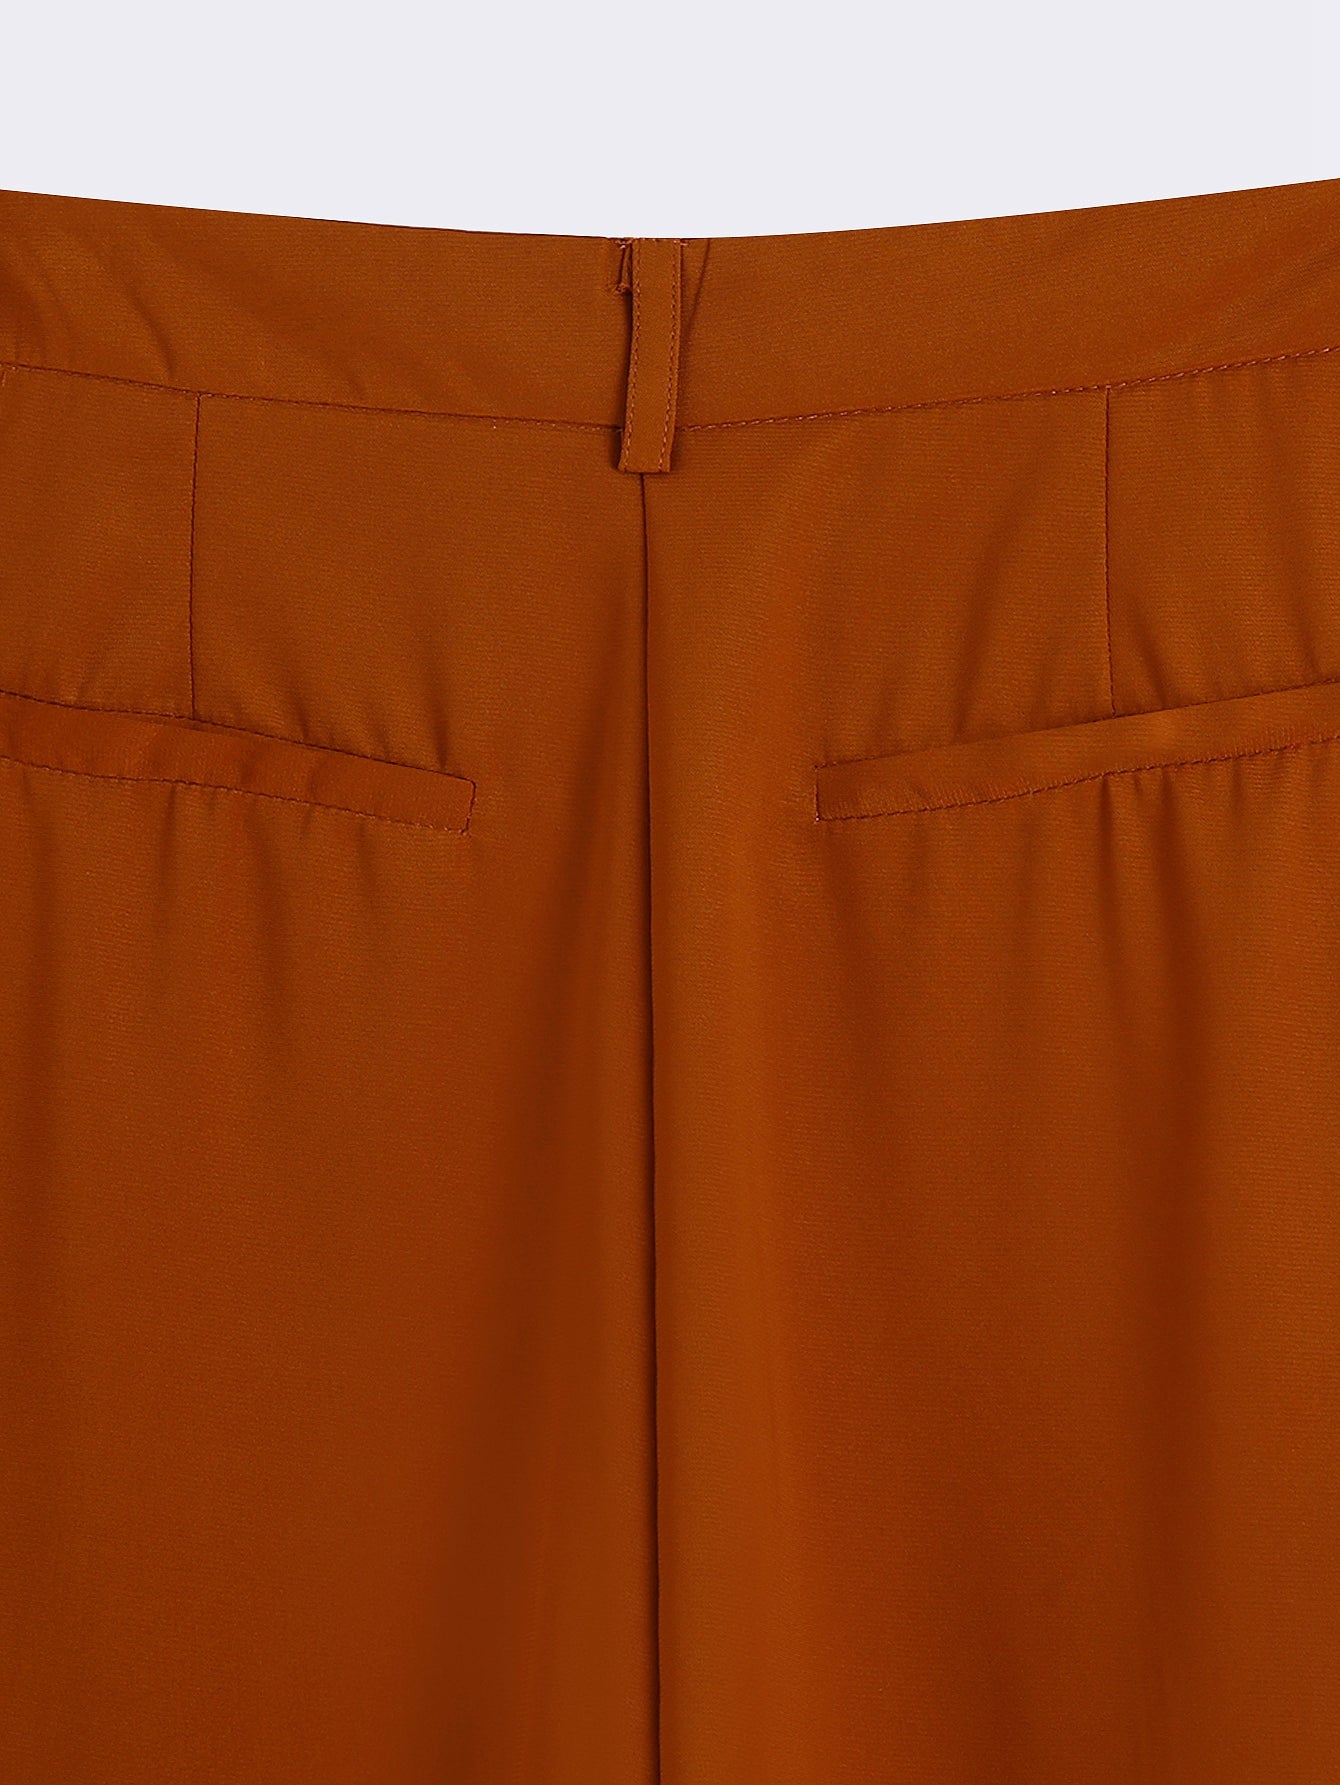 Boss Up Pant Set | Fancy pants outfit, Orange pants outfit, Pantsuit